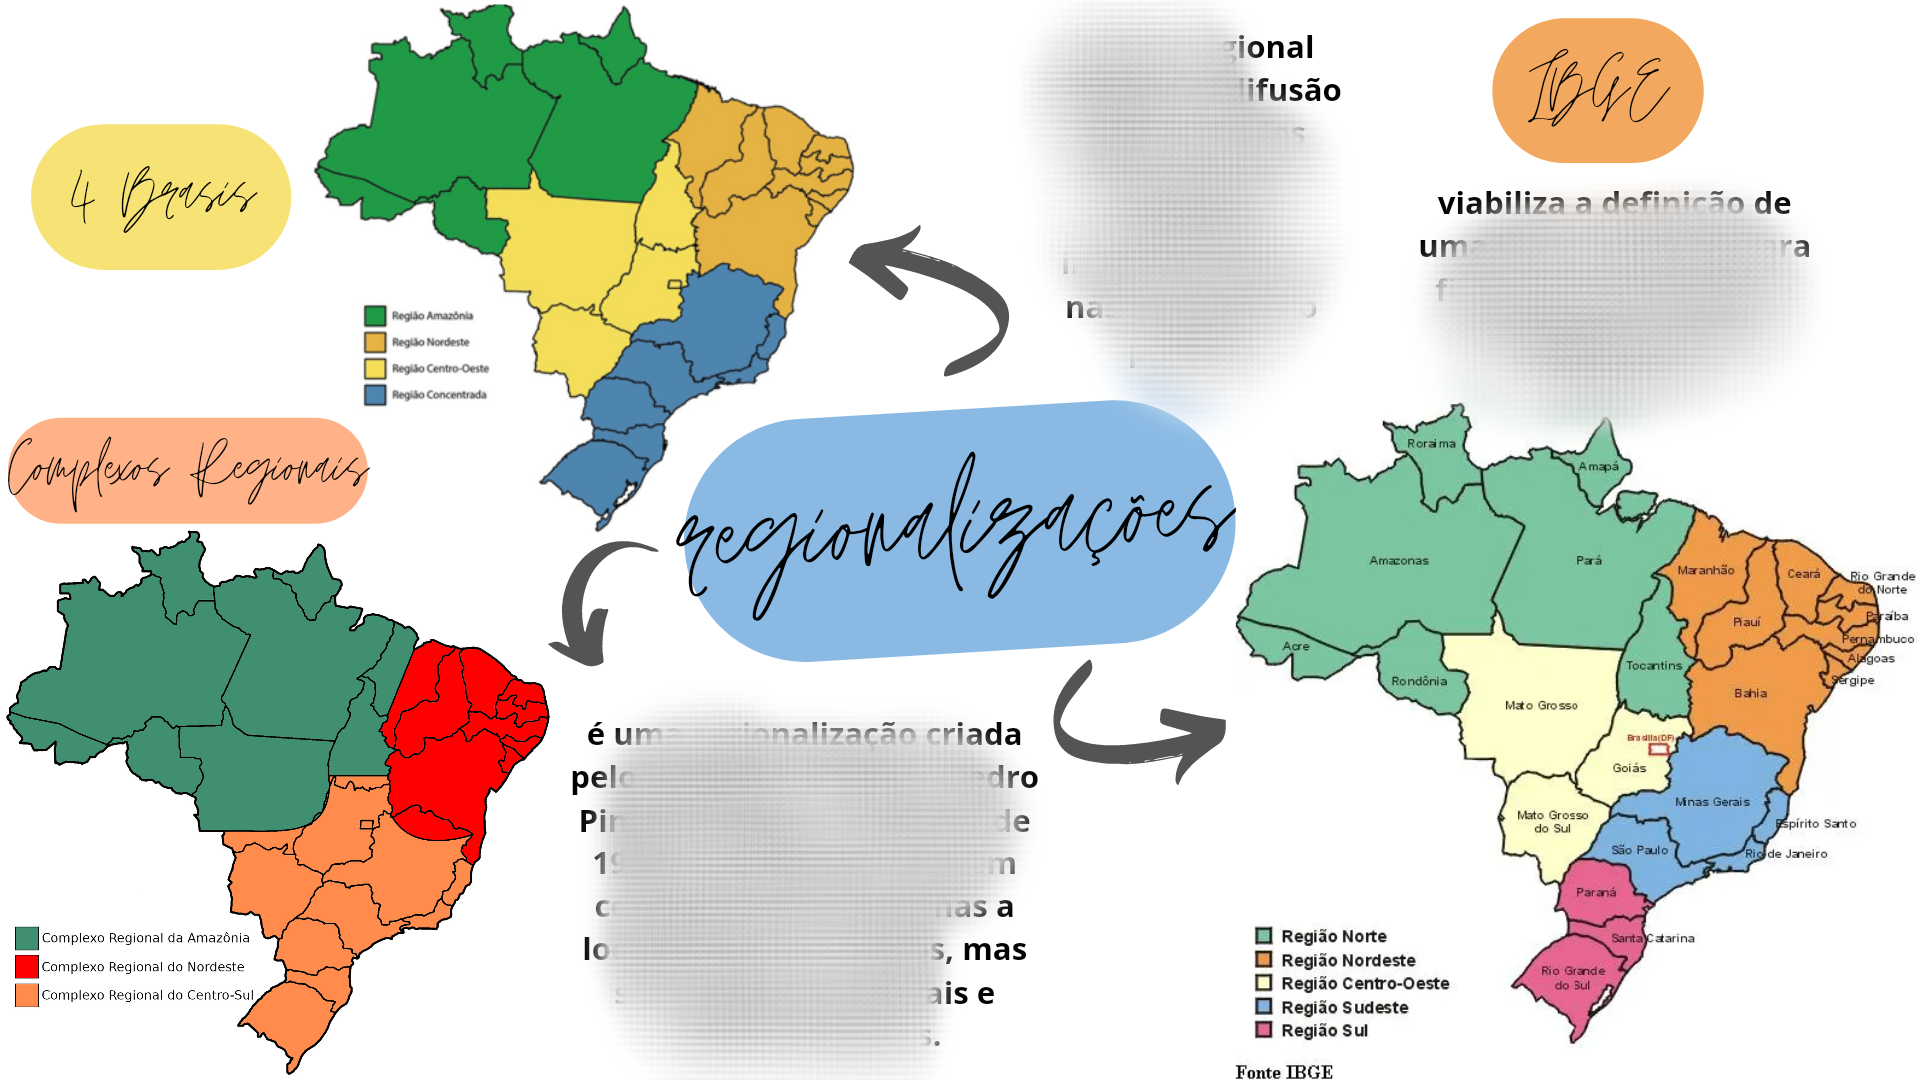 Mapas Mentais sobre REGIÕES BRASILEIRAS - Study Maps